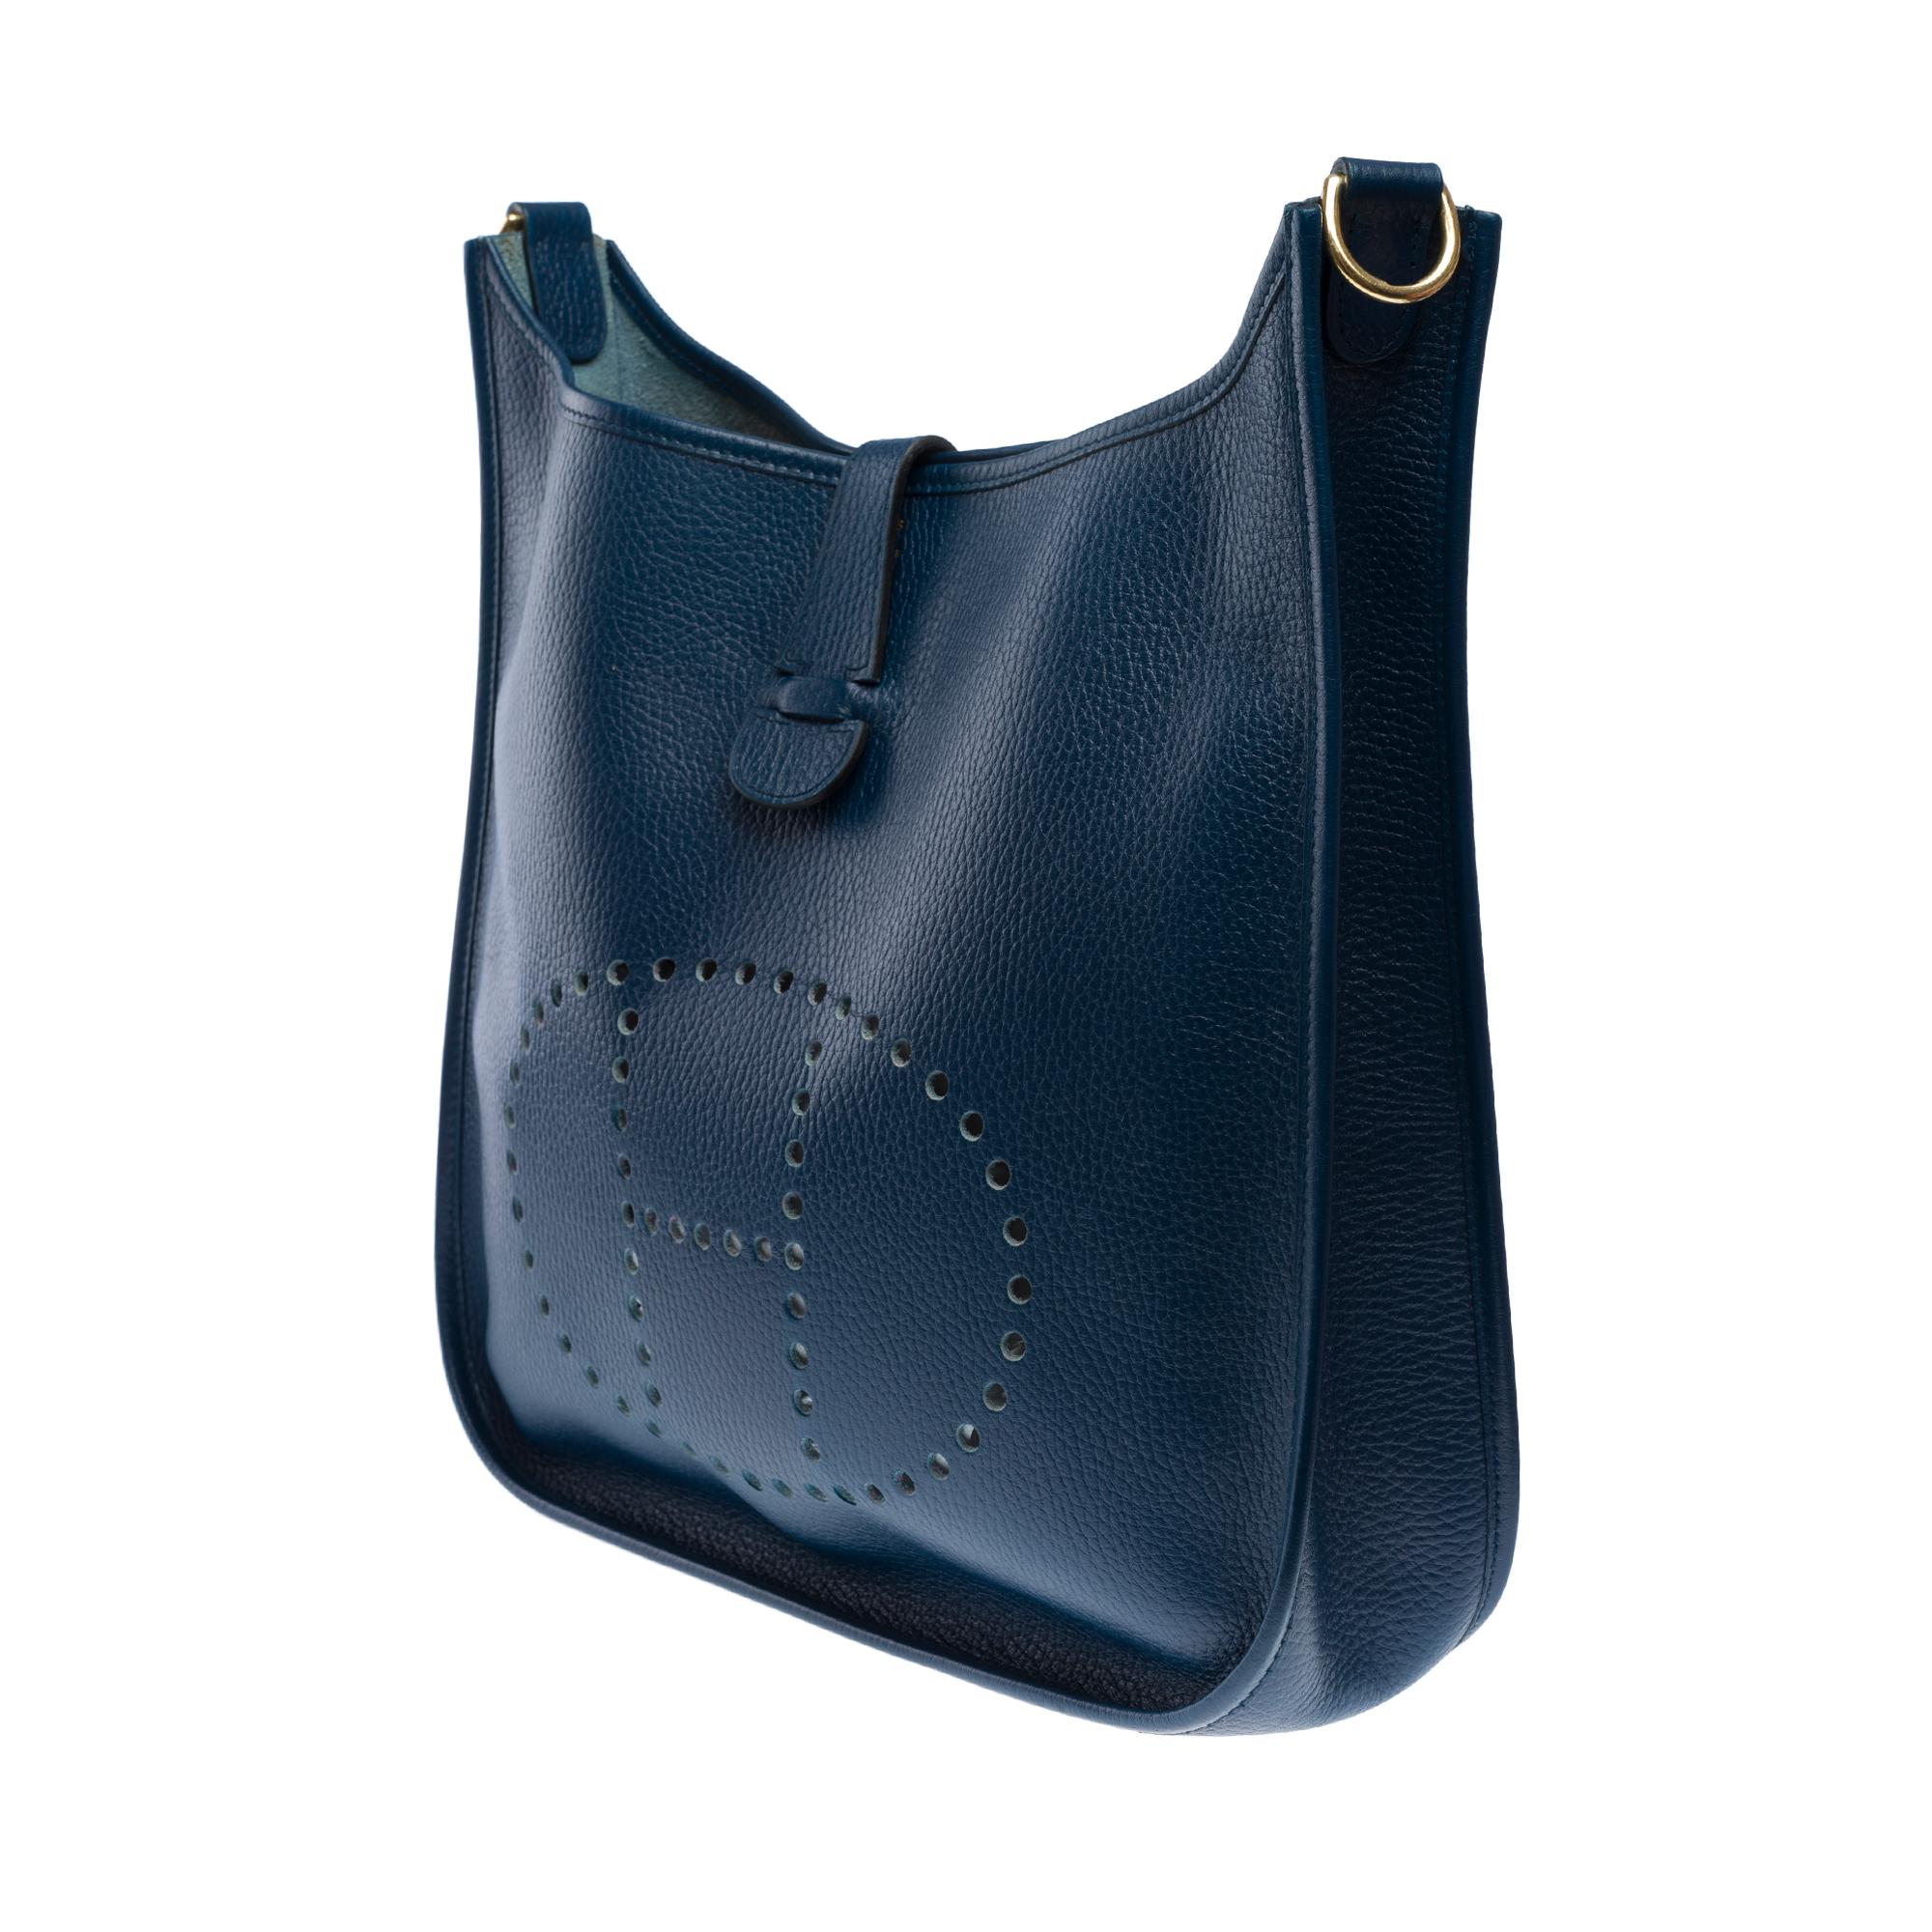 Hermès Evelyne GM  shoulder bag in Navy Blue Taurillon Clemence leather, GHW For Sale 2